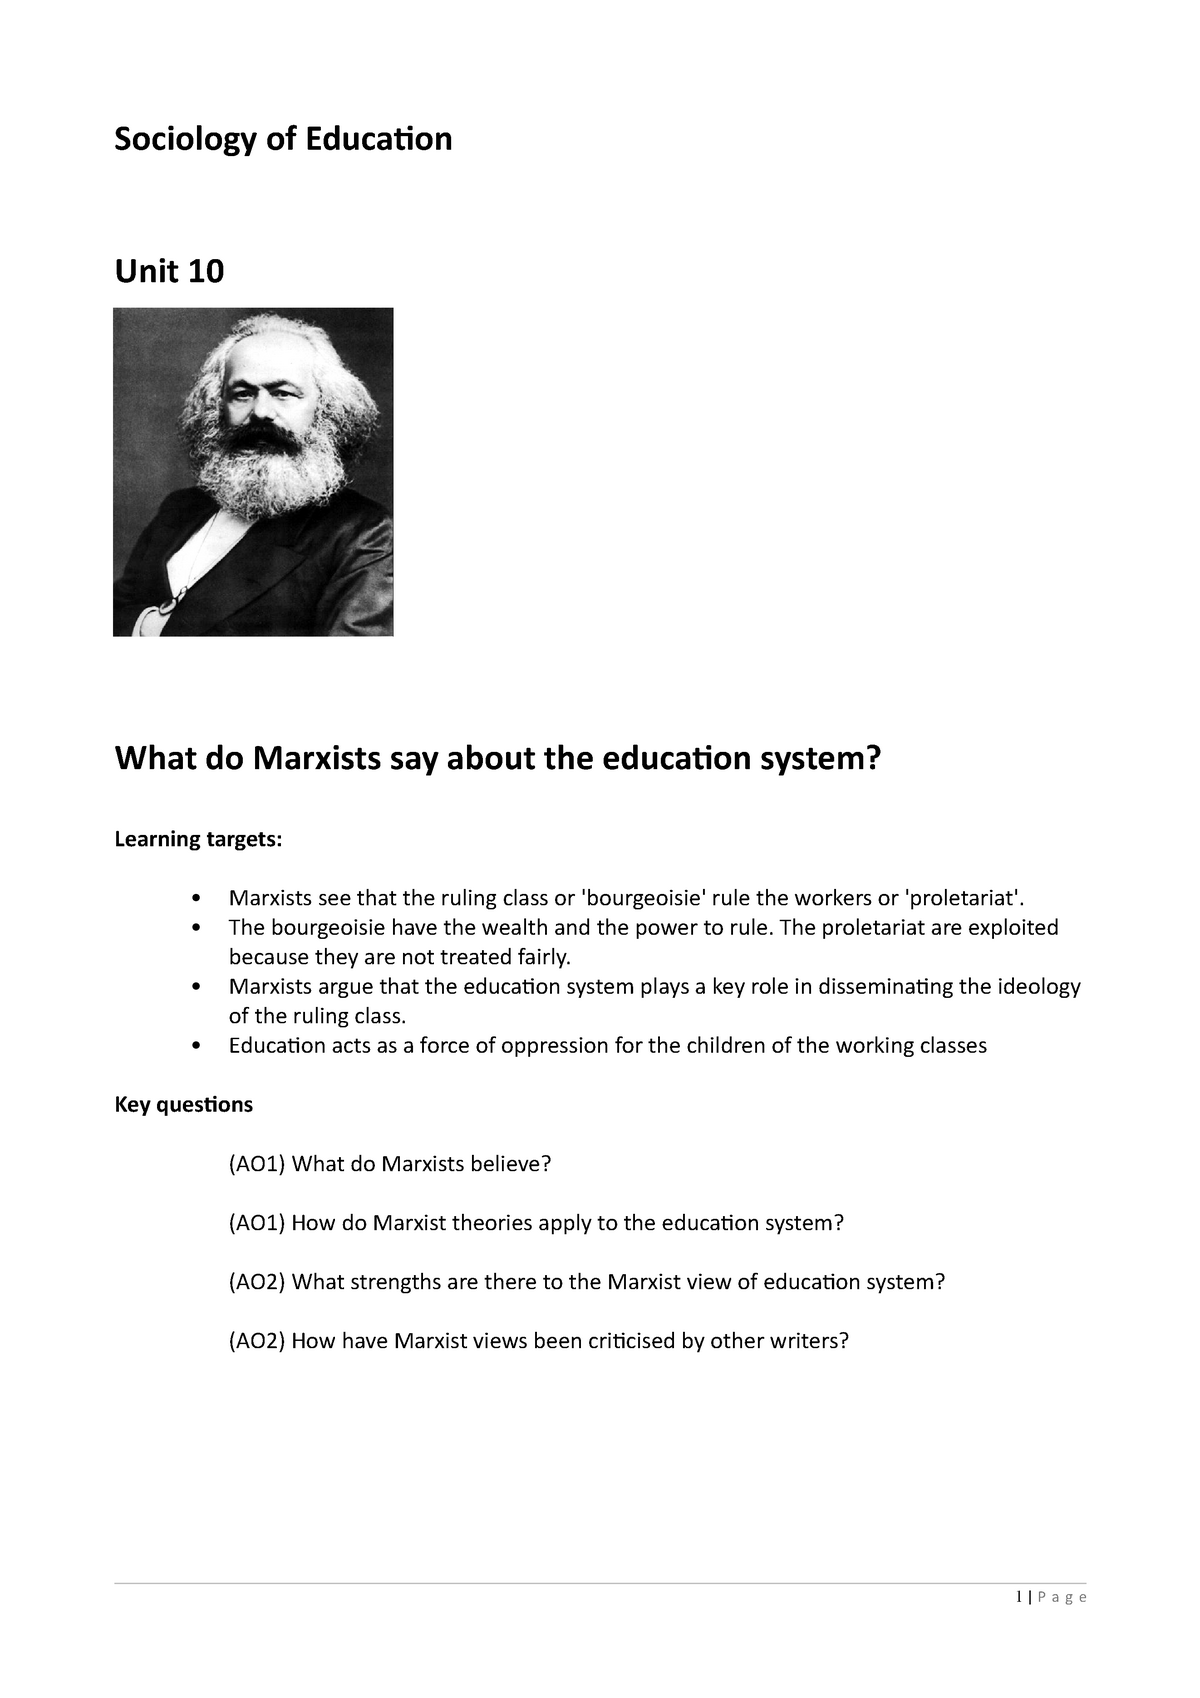 marxist theory and education summary